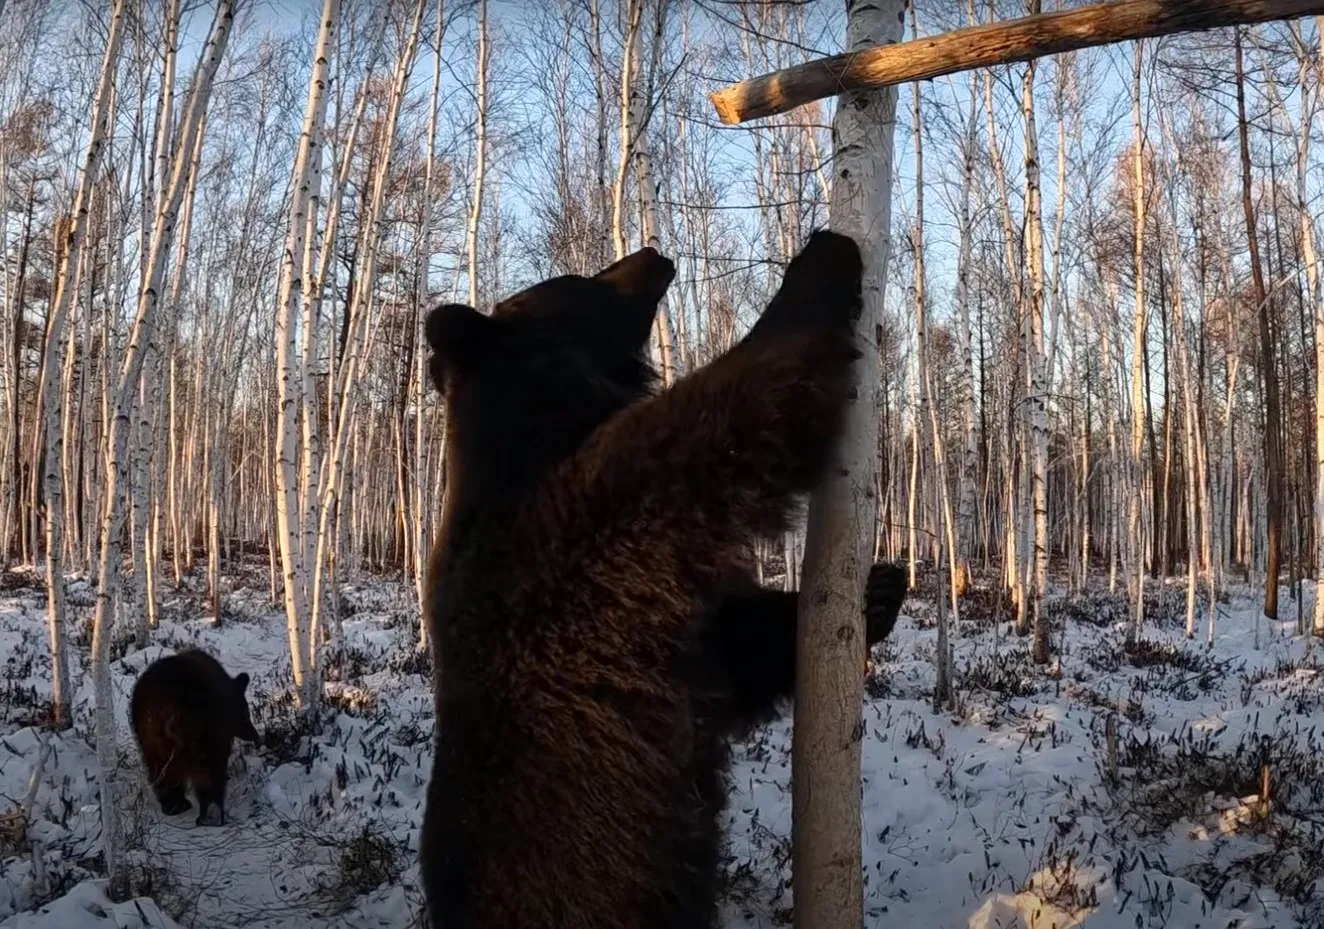 Житель тайги выгулял медведей и устроил им соревнования по добыче сгущёнки